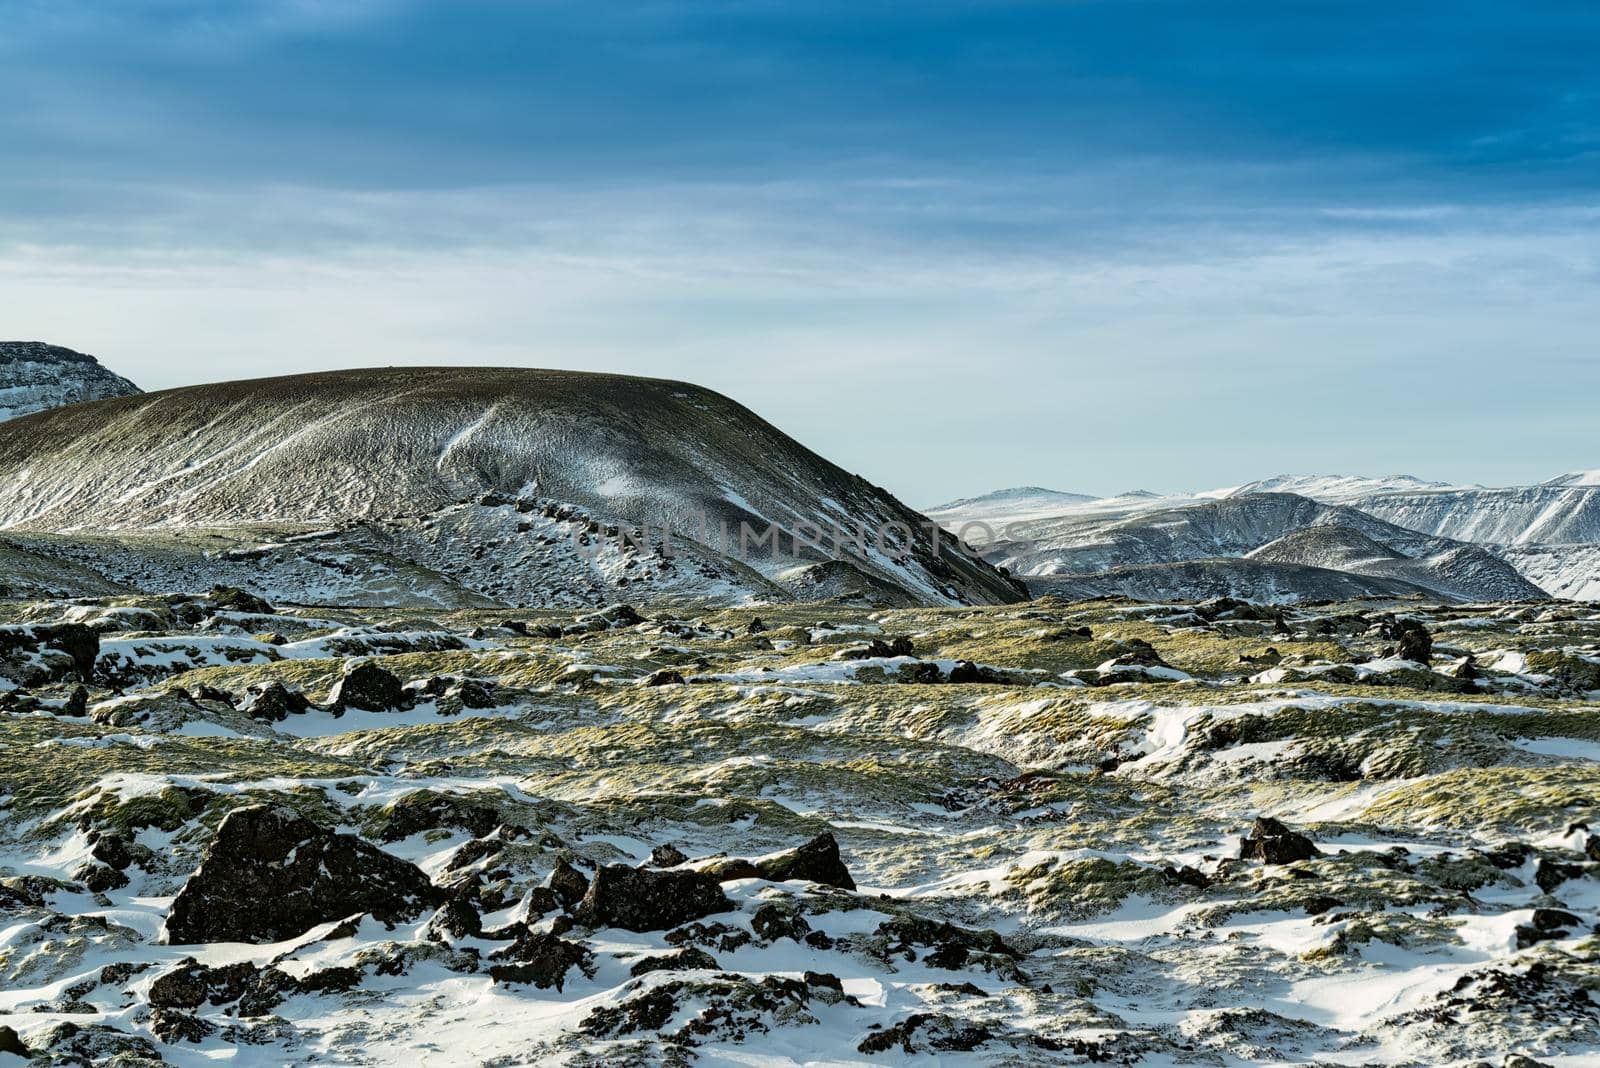 Mountains near Hveragerdi, Iceland by LuigiMorbidelli